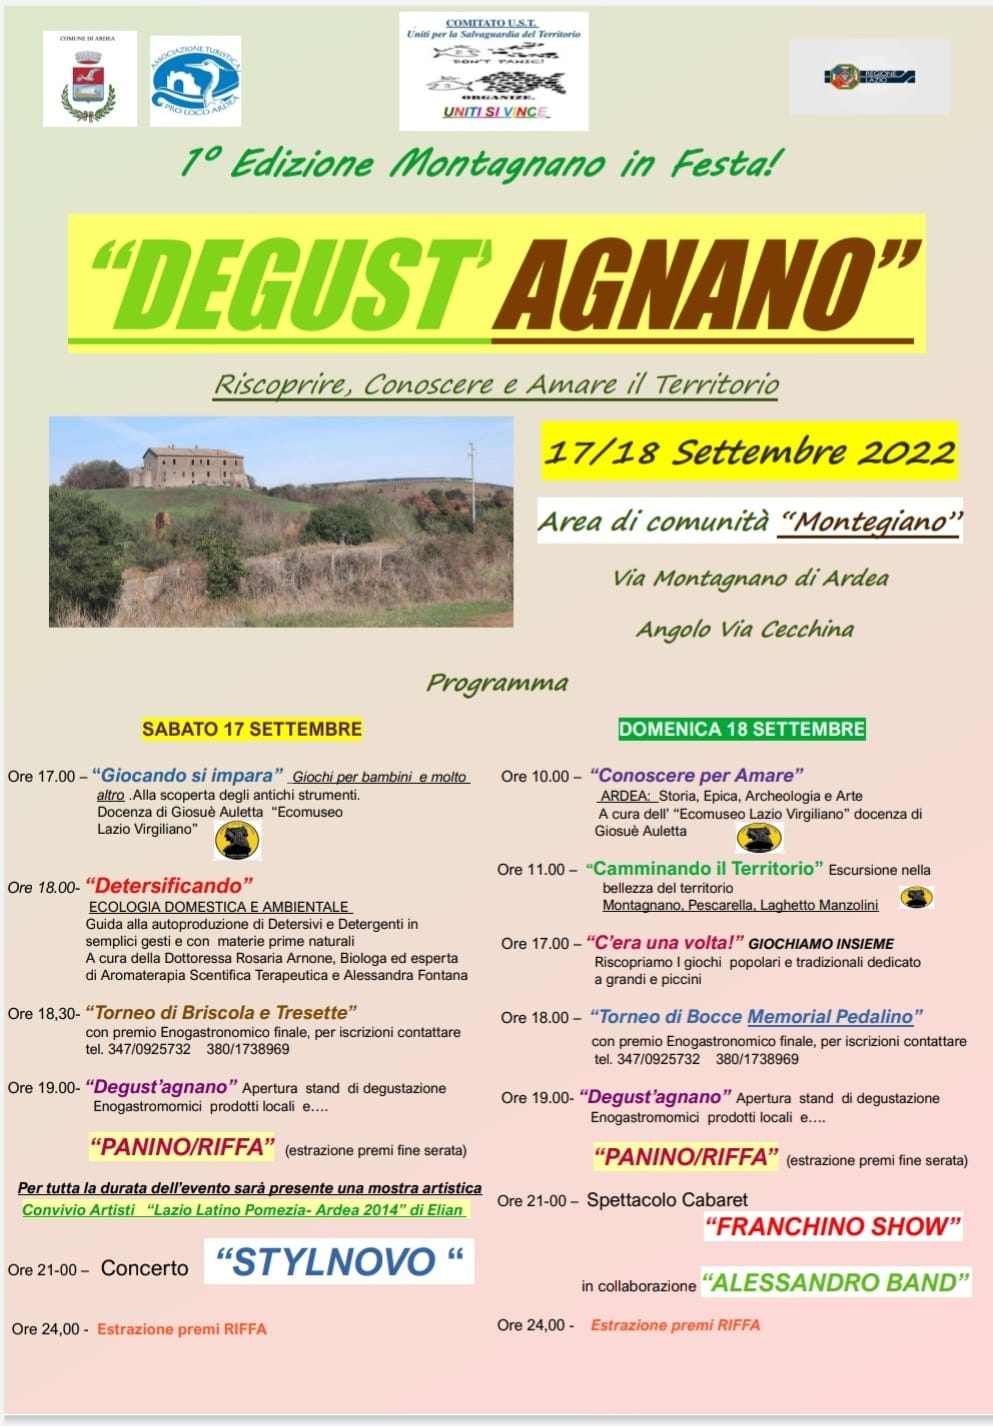 Montagnano, fraz. di Ardea (RM)
"Degust'Agnano"
17-18 Settembre 2022